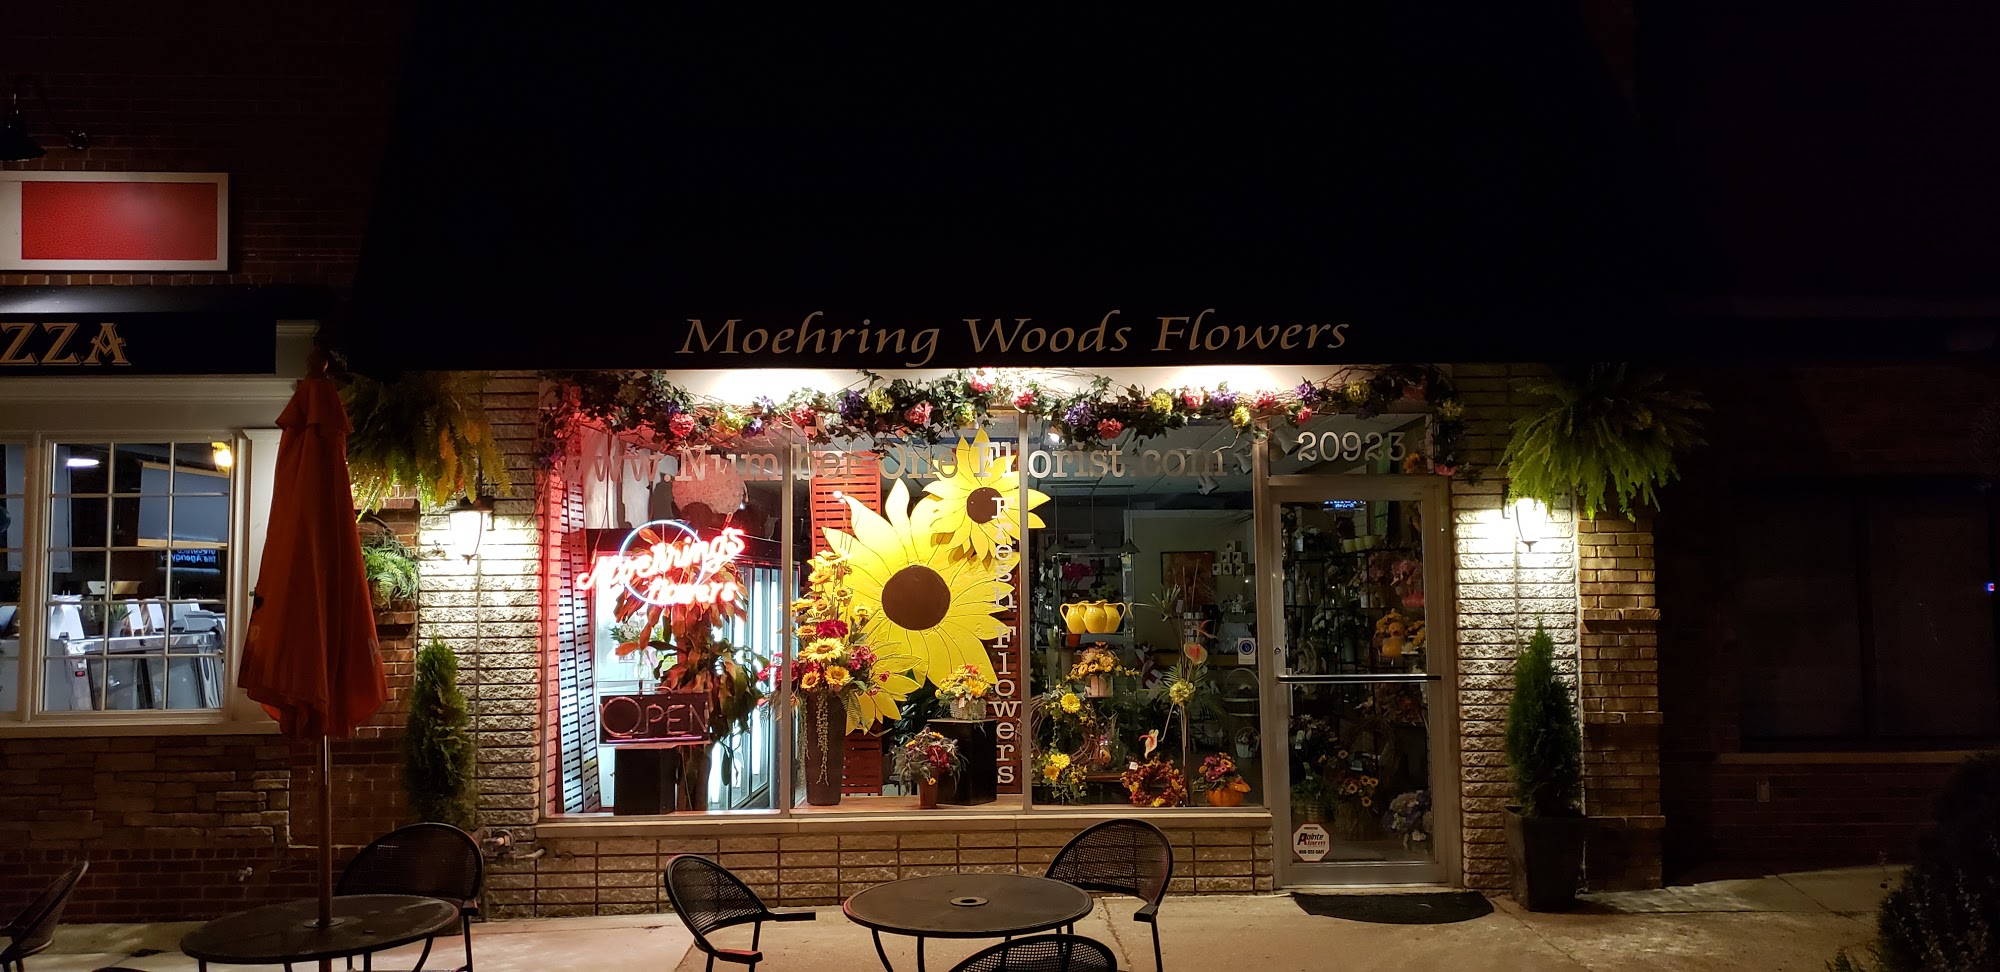 Moehring Woods Flowers